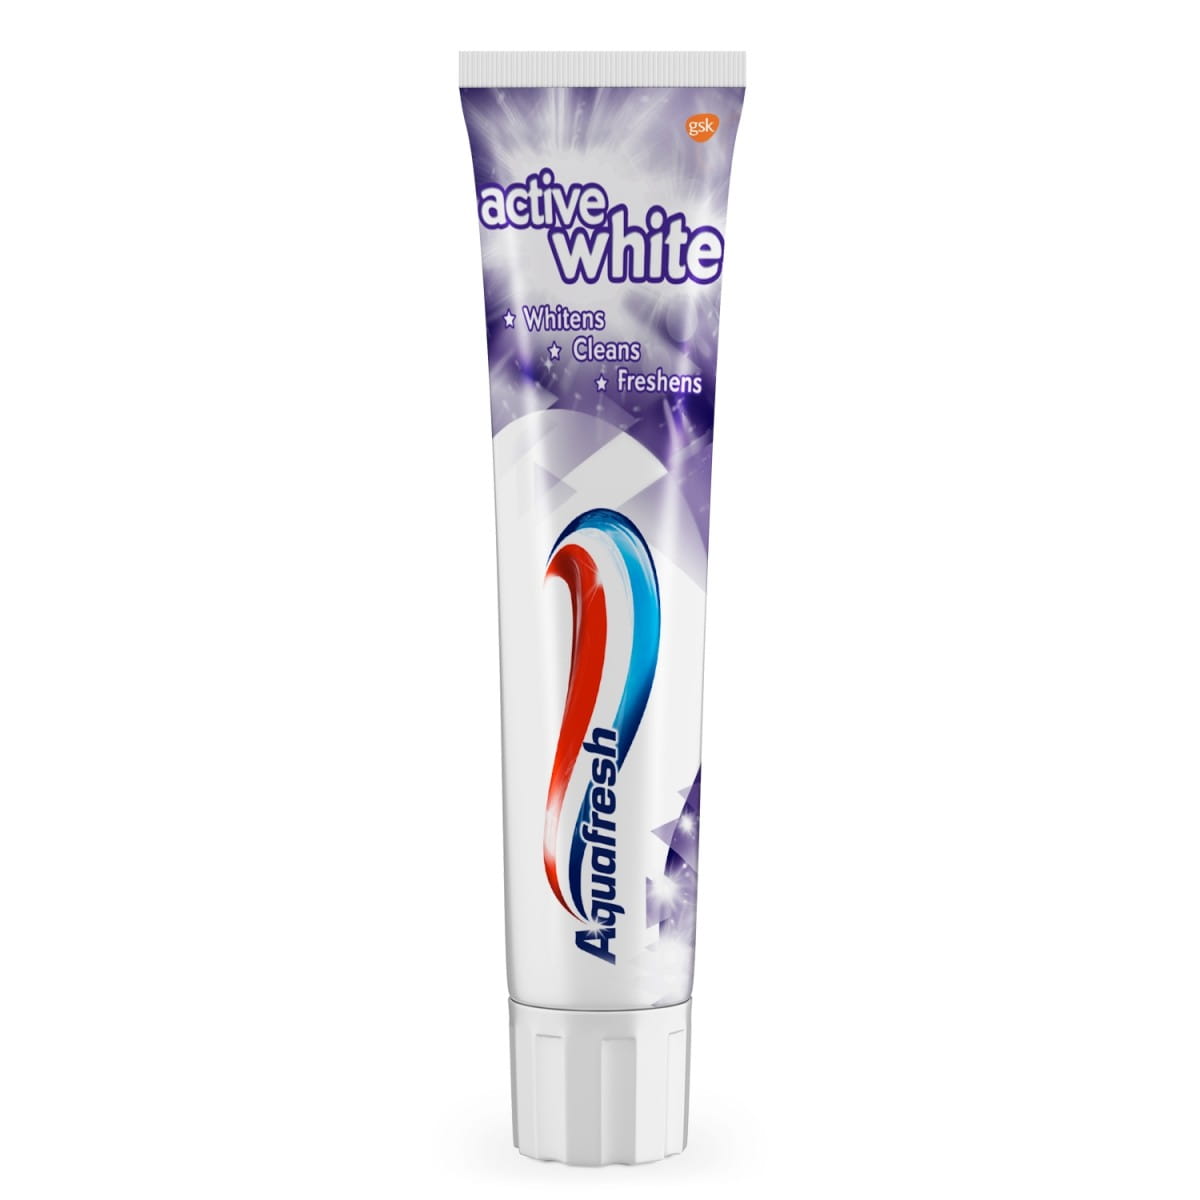 Aktive weiße Zahnpasta 125 ml